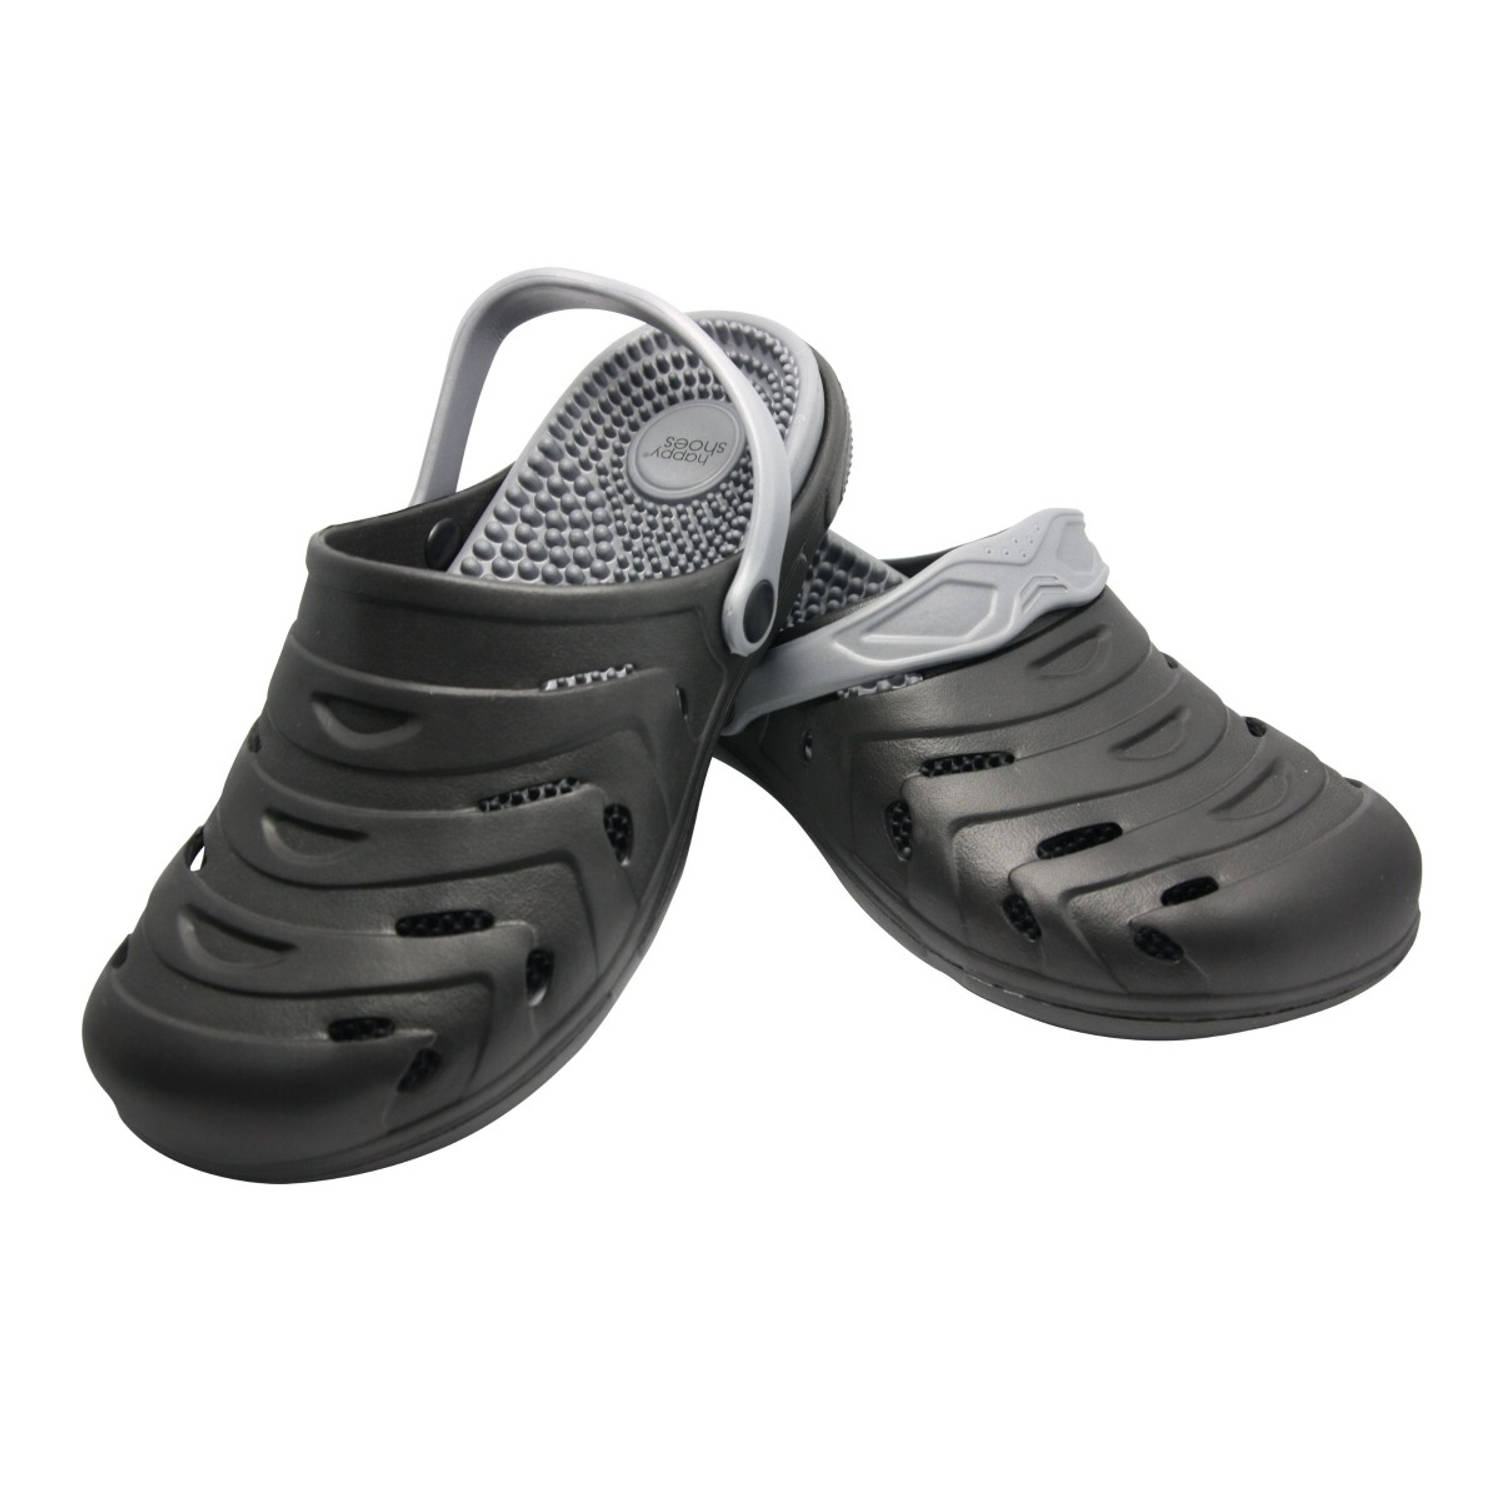 Happy Shoes Massage Clogs – maat 39 – zwart – Pantoffels, slippers en sloffen voor mannen en vrouwen – uitneembare zool